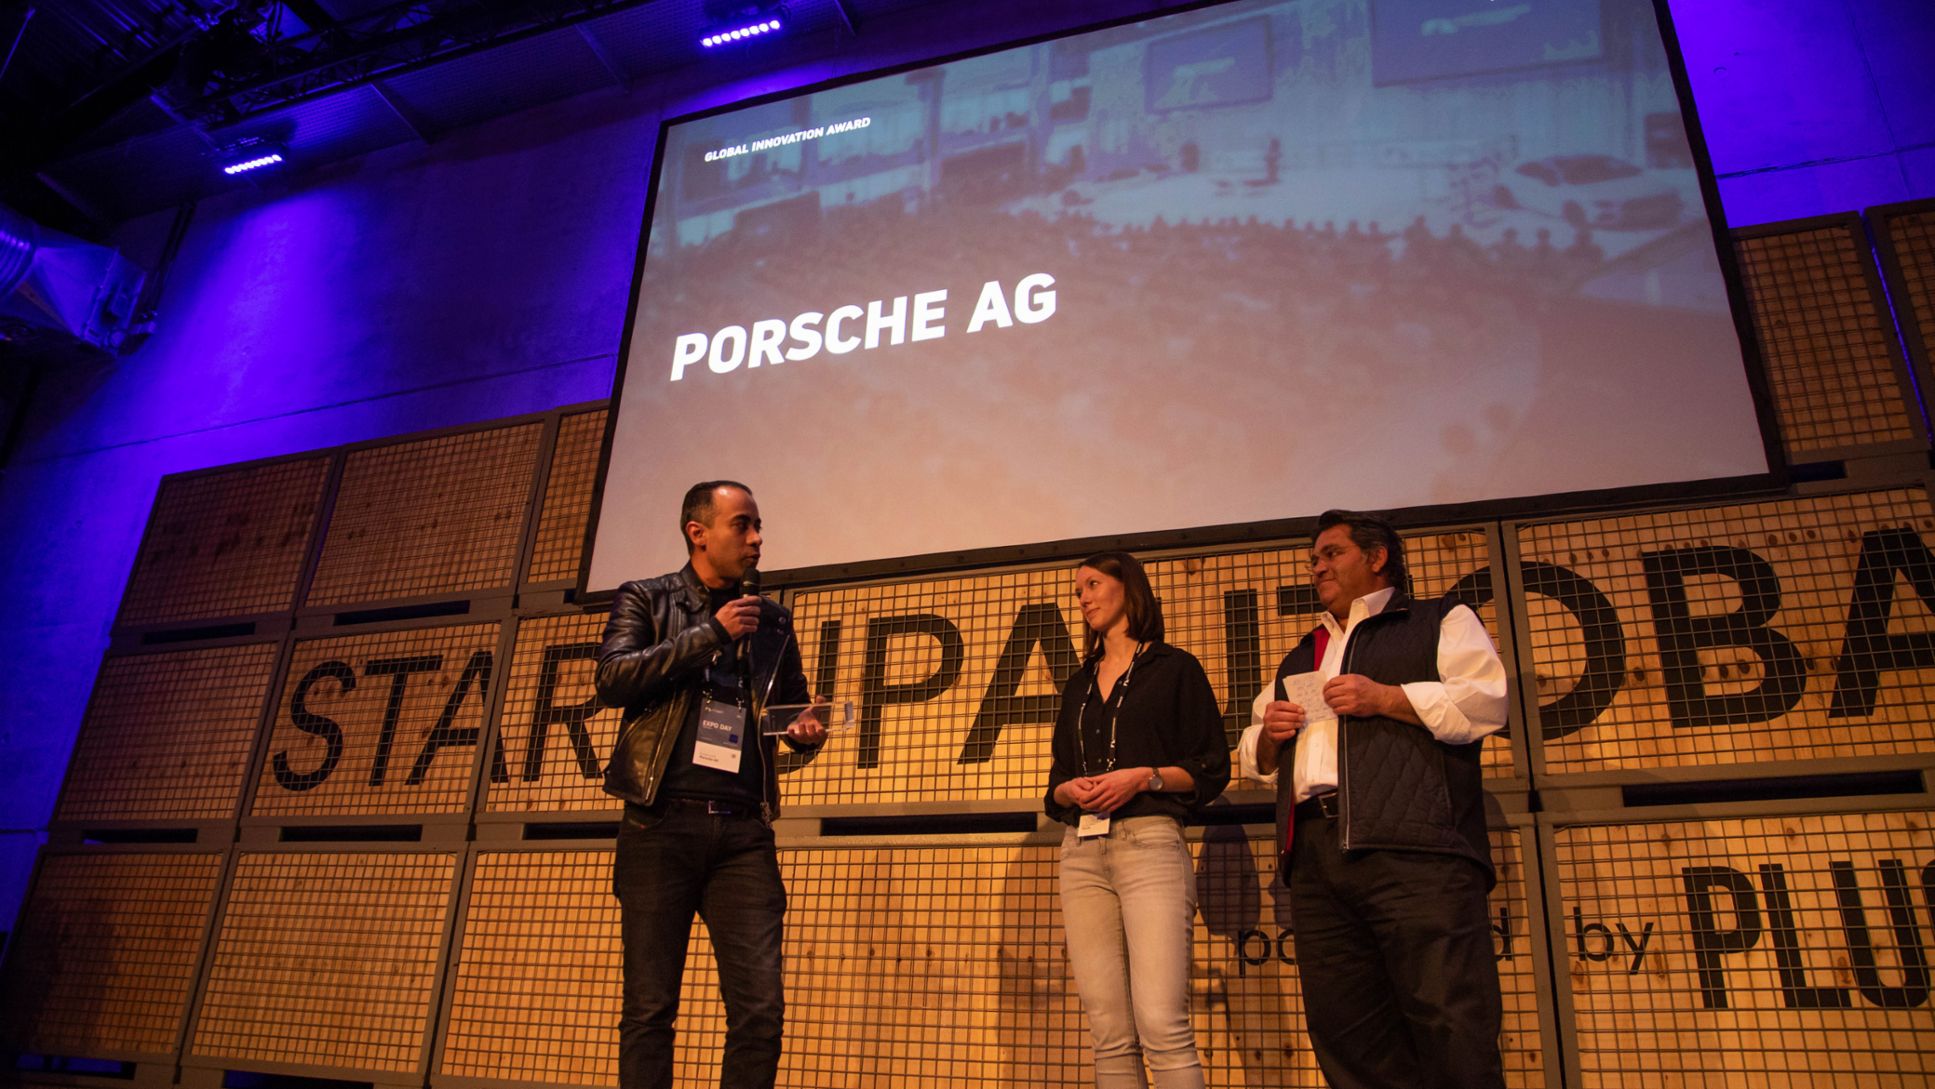 Кристиан Кнорле, Таня Дойченбаур, Саед Амиди (слева направо), церемония вручения награды Global Innovation Award, мероприятие Expo Day на Startup Autobahn, Штутгарт, 2019, Porsche AG